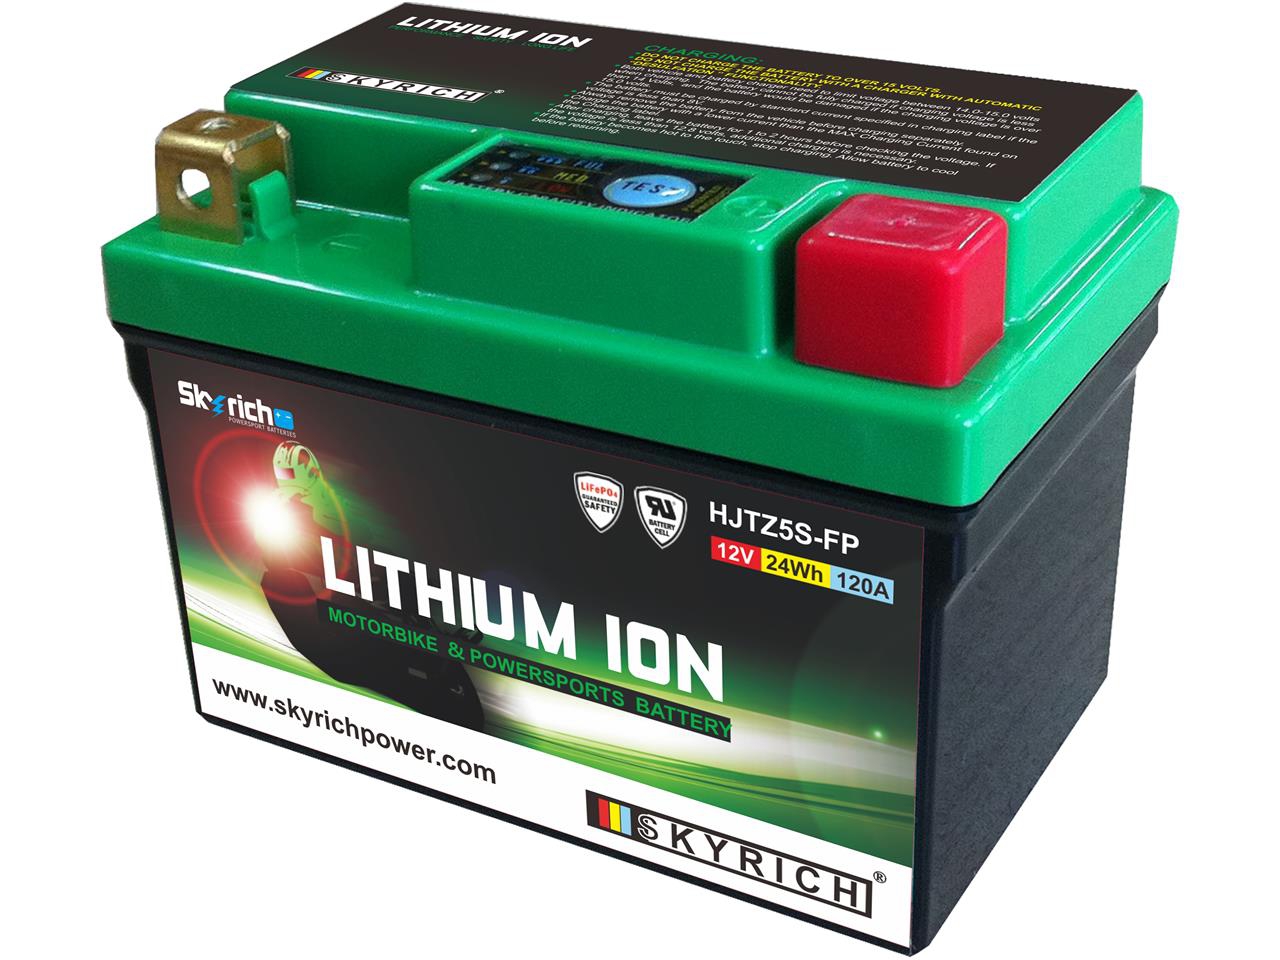 Skyrich Lithium Ion accu LTZ5S